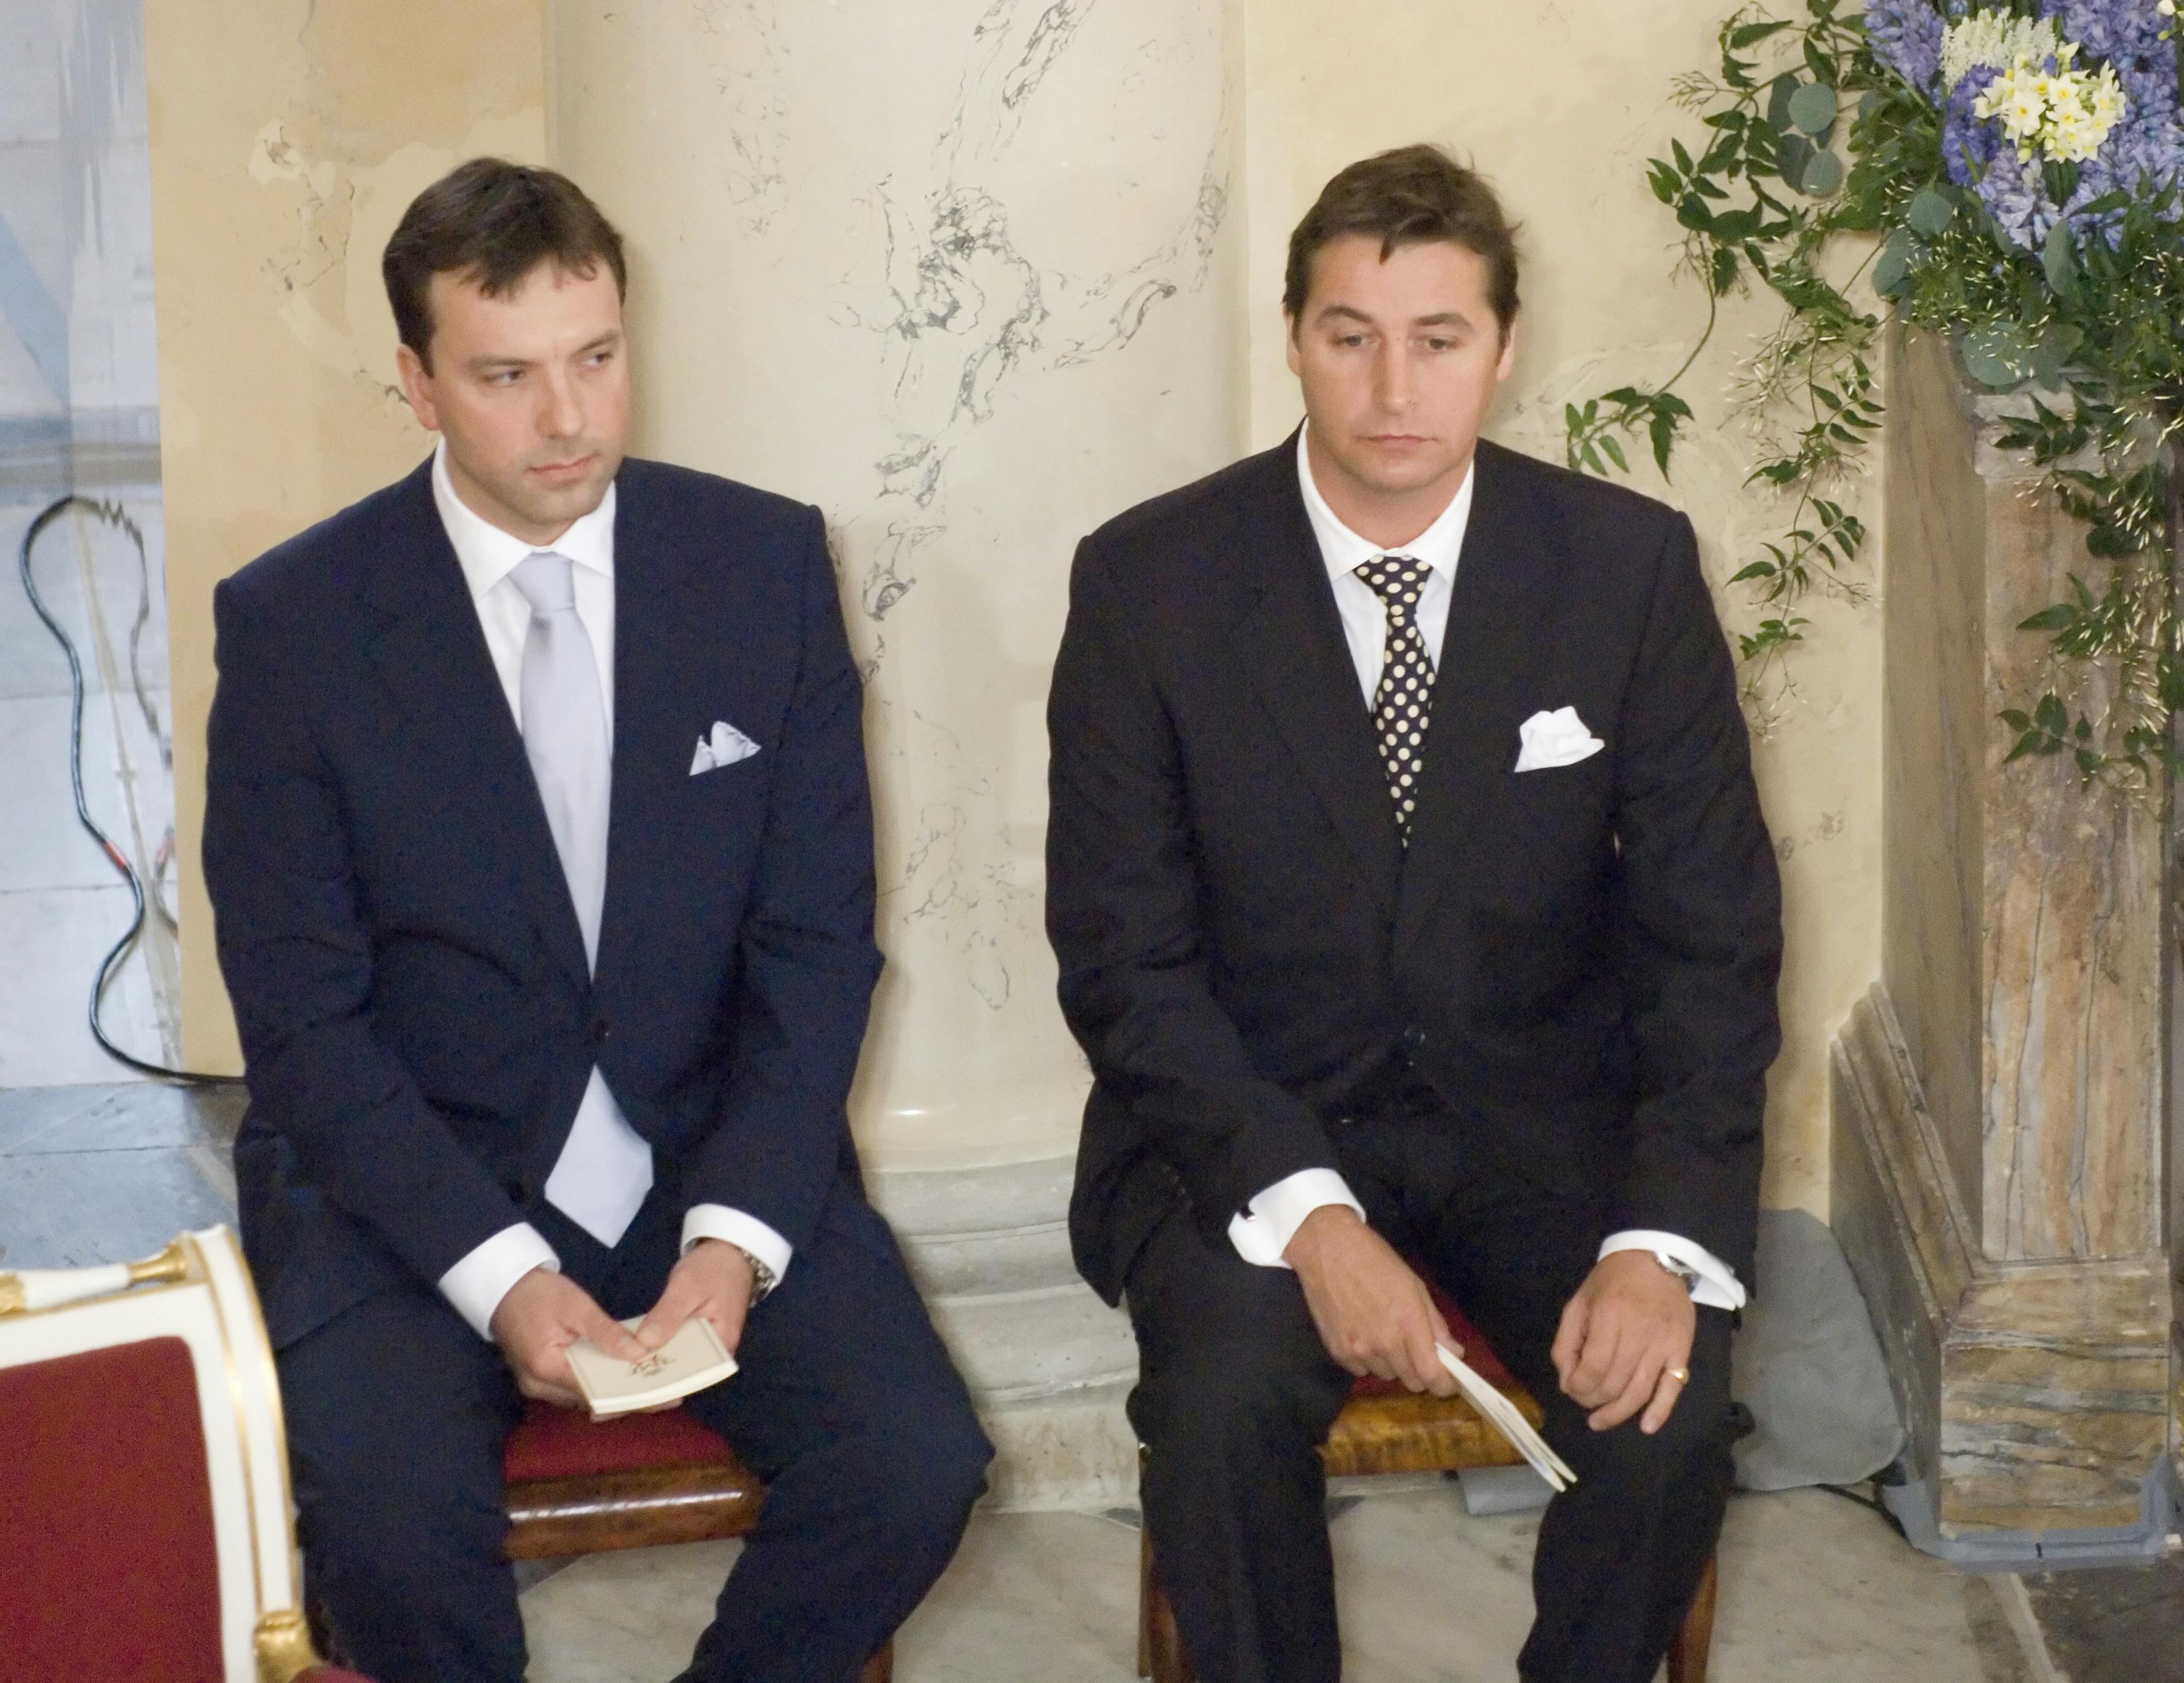 Jeppe Handwerk og Hamish Campbell til prins Christians dåb i 2006.
